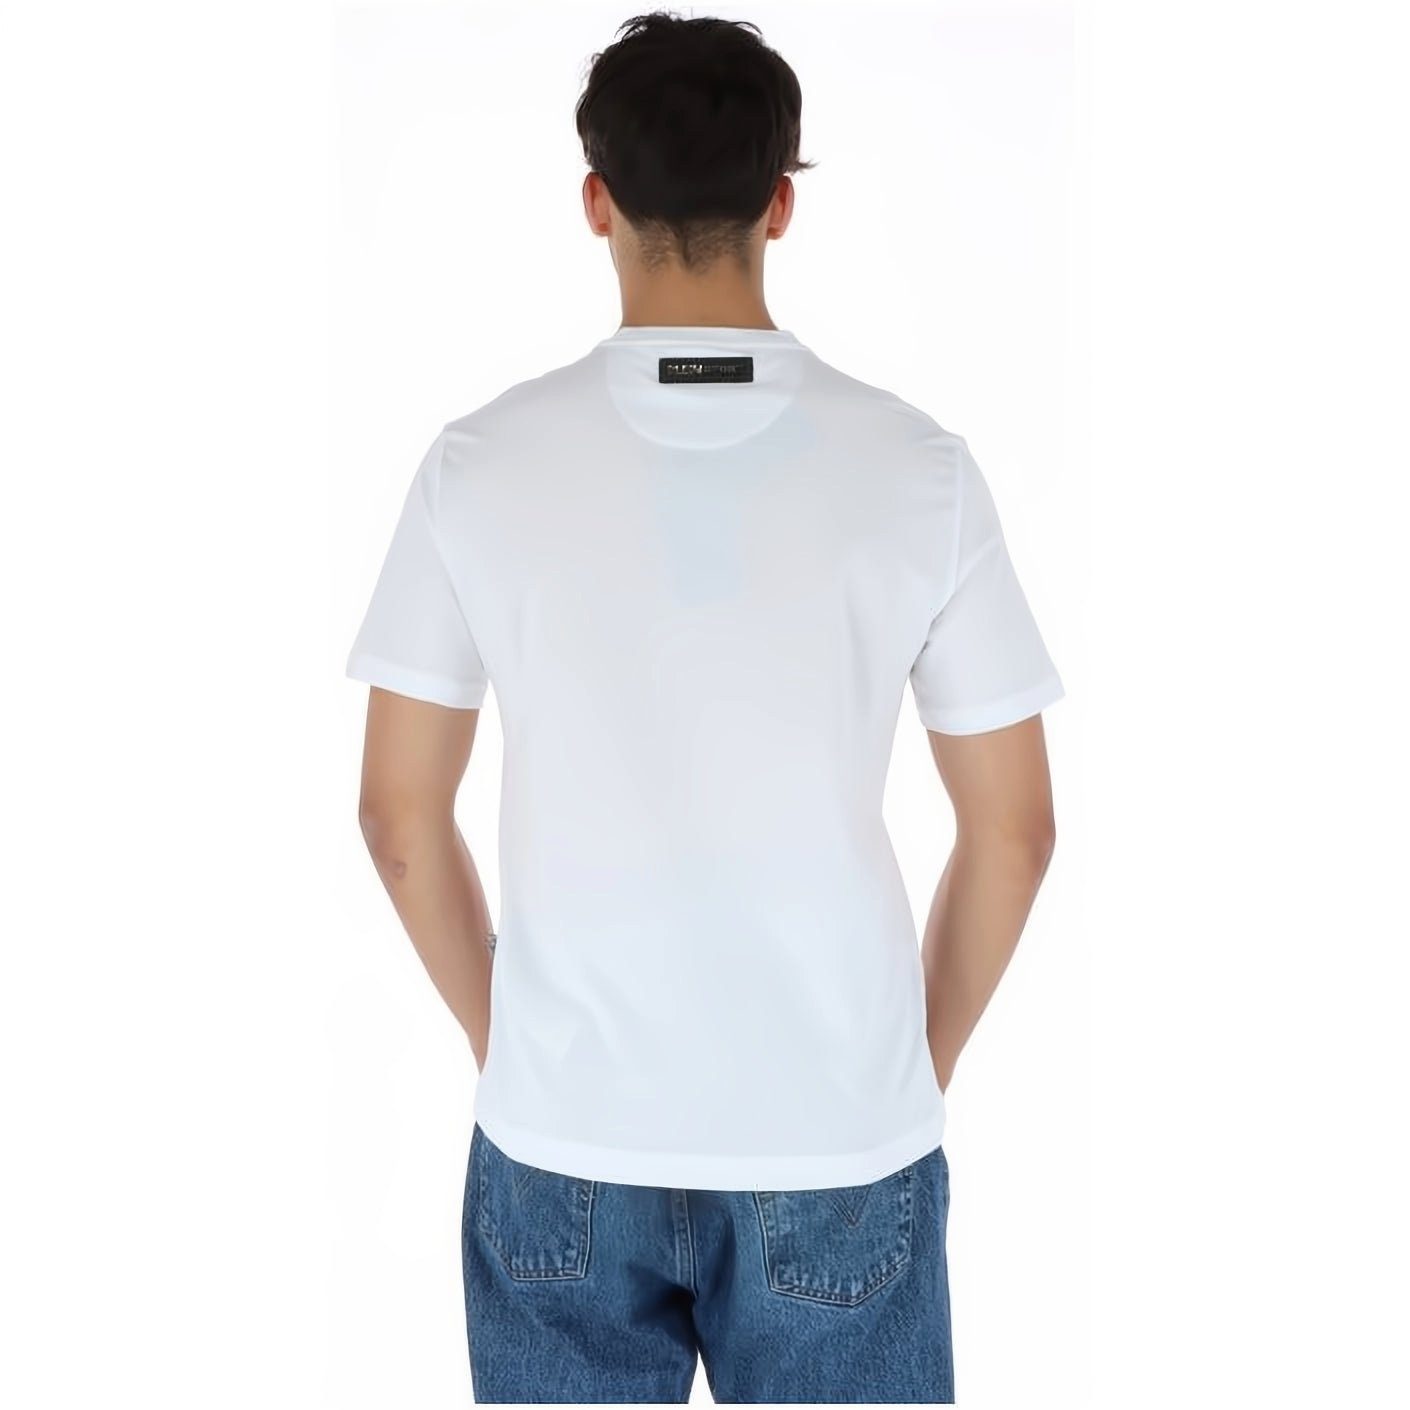 T-Shirt NECK Tragekomfort, hoher Stylischer ROUND PLEIN SPORT vielfältige Look, Farbauswahl